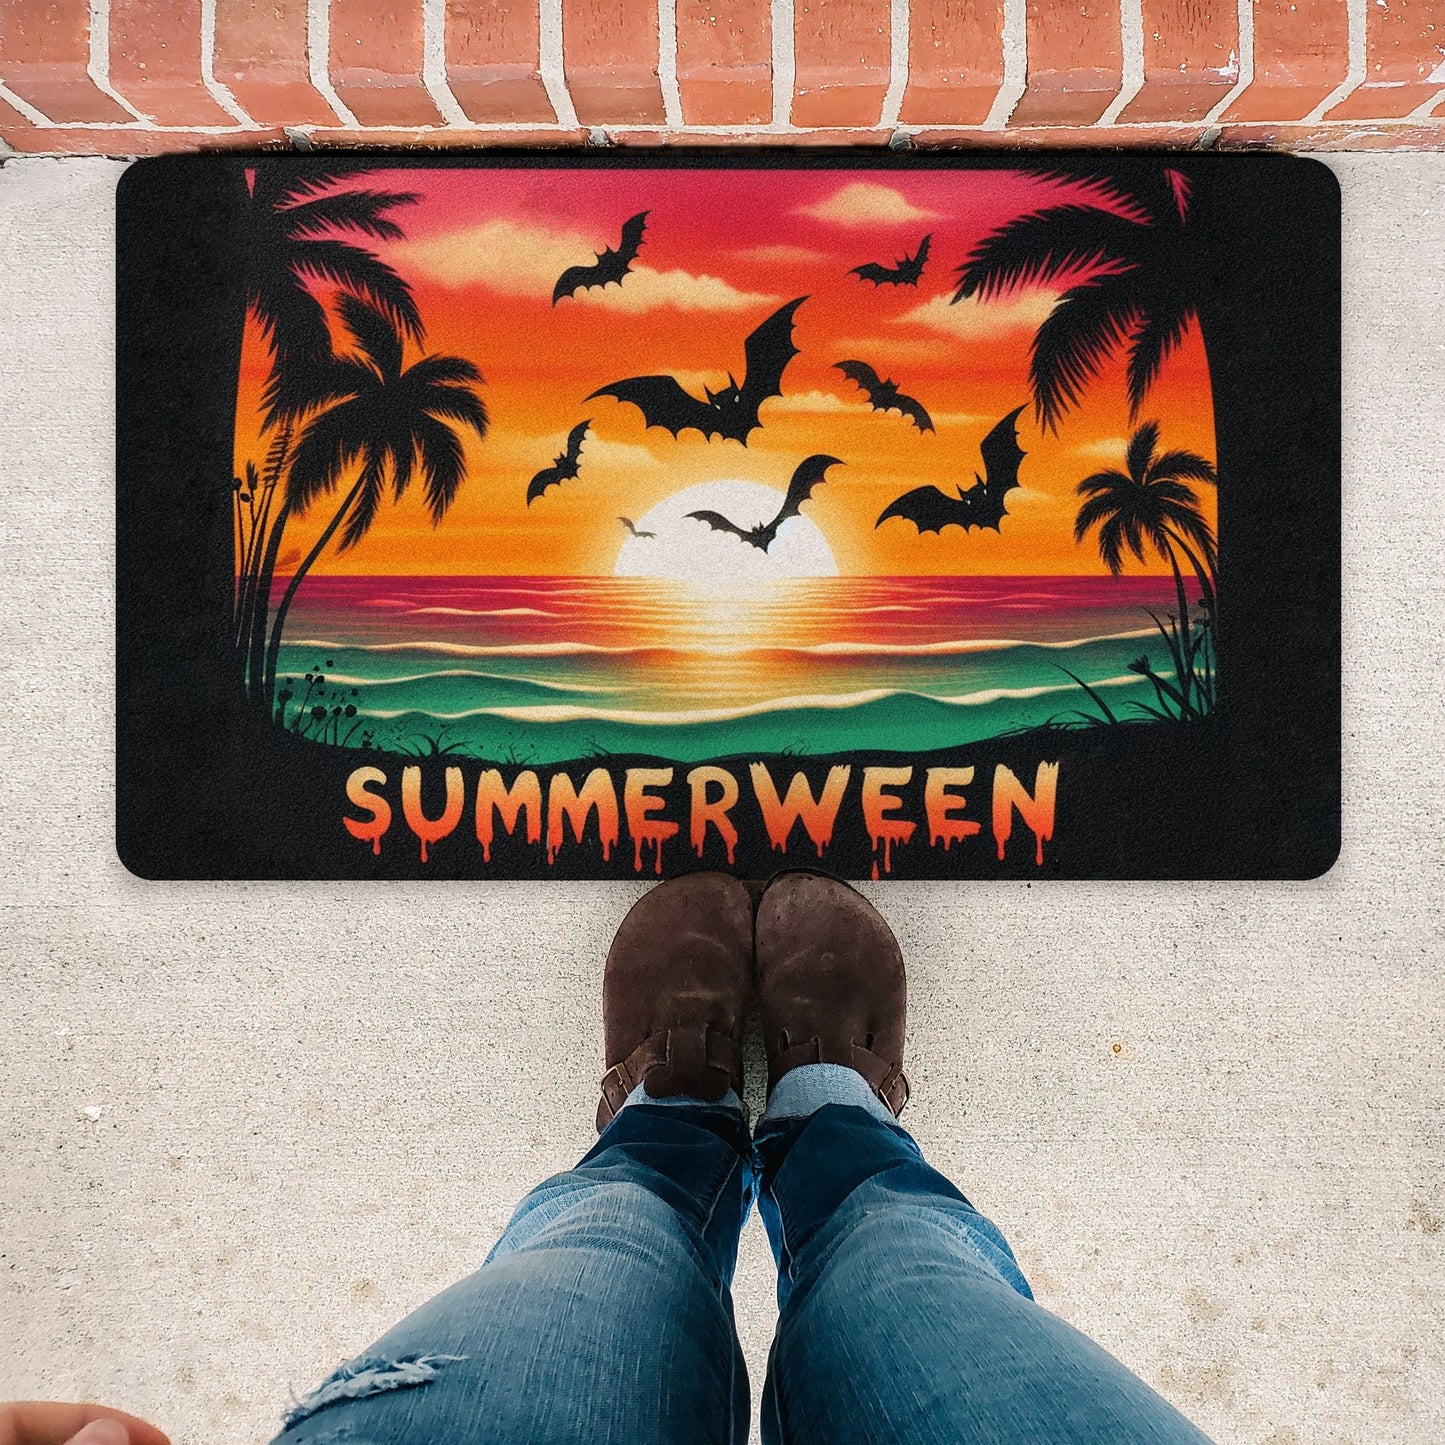 Summerween Sunset Bats Rubber DoormatVTZdesigns30x18Whitebatsbeachdoor mat